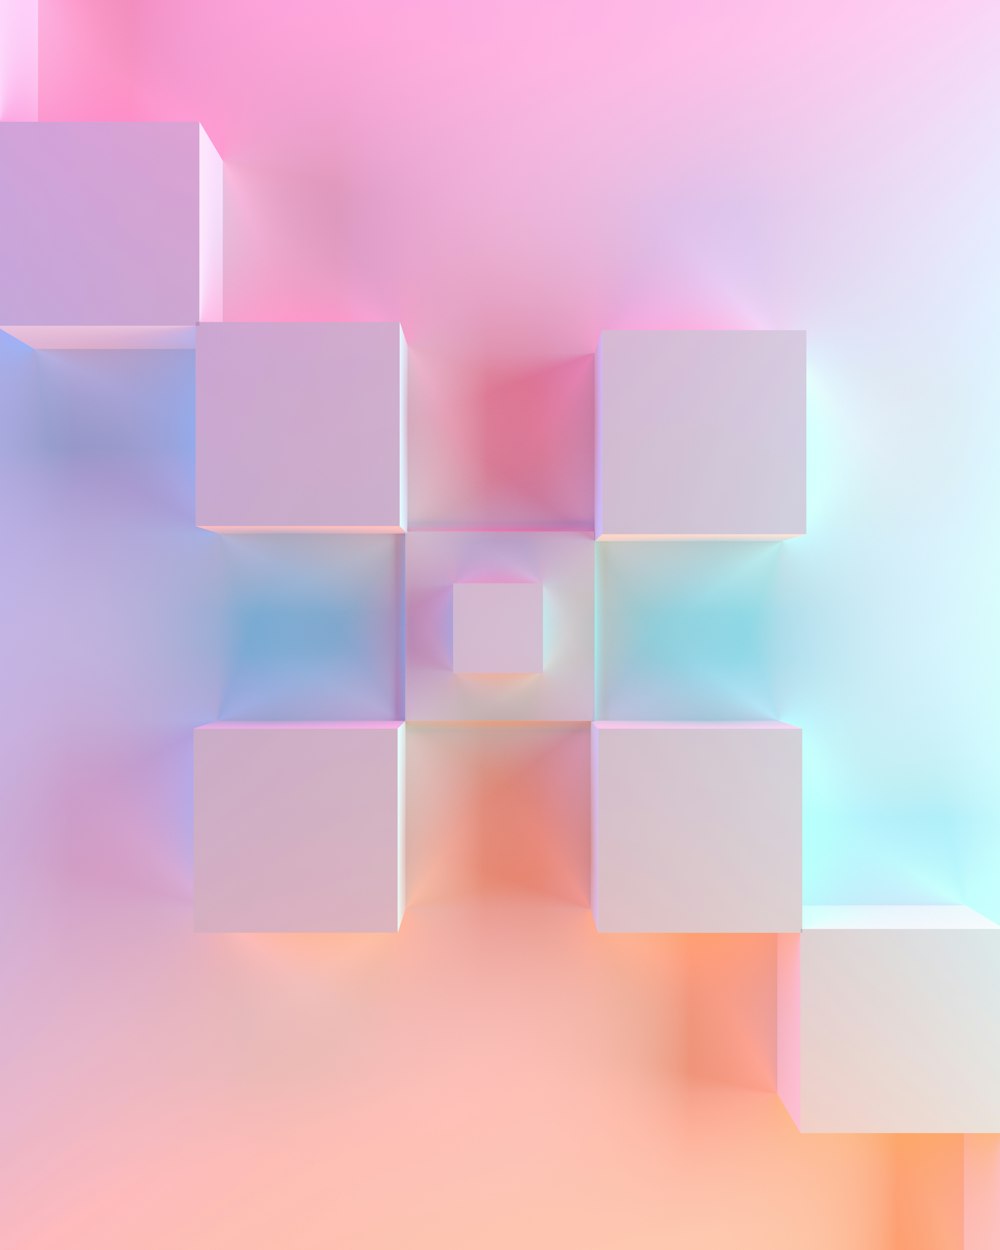 une image floue de cubes sur fond rose et bleu